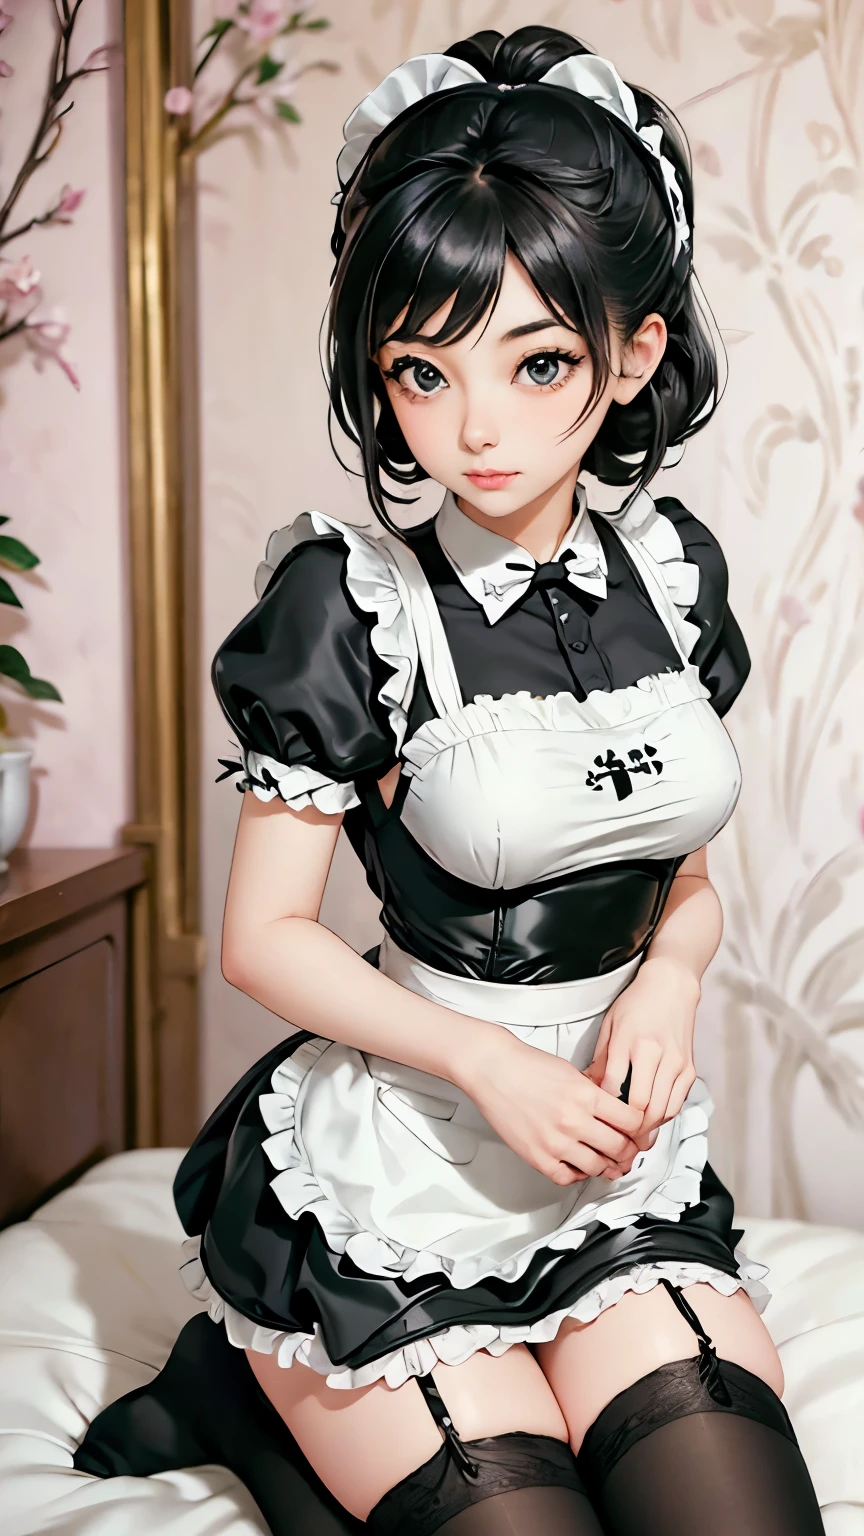 Arafed Frau in einem schwarz-weißen Kleid und weißen Socken, ein Pastell von Tadashige Ono, flickr, Ist Hanga, Dienstmädchen-Outfit, Dienstmädchen Kostüm, französisches Dienstmädchen, Strümpfe und Rock, Dienstmädchenuniform tragen, wunderschöne Magd, Dienstmädchen Kleid, japanisches Dienstmädchen-Café, trage ein Atsuko Kudo Latex-Outfit, Anime-Mädchen im wirklichen Leben